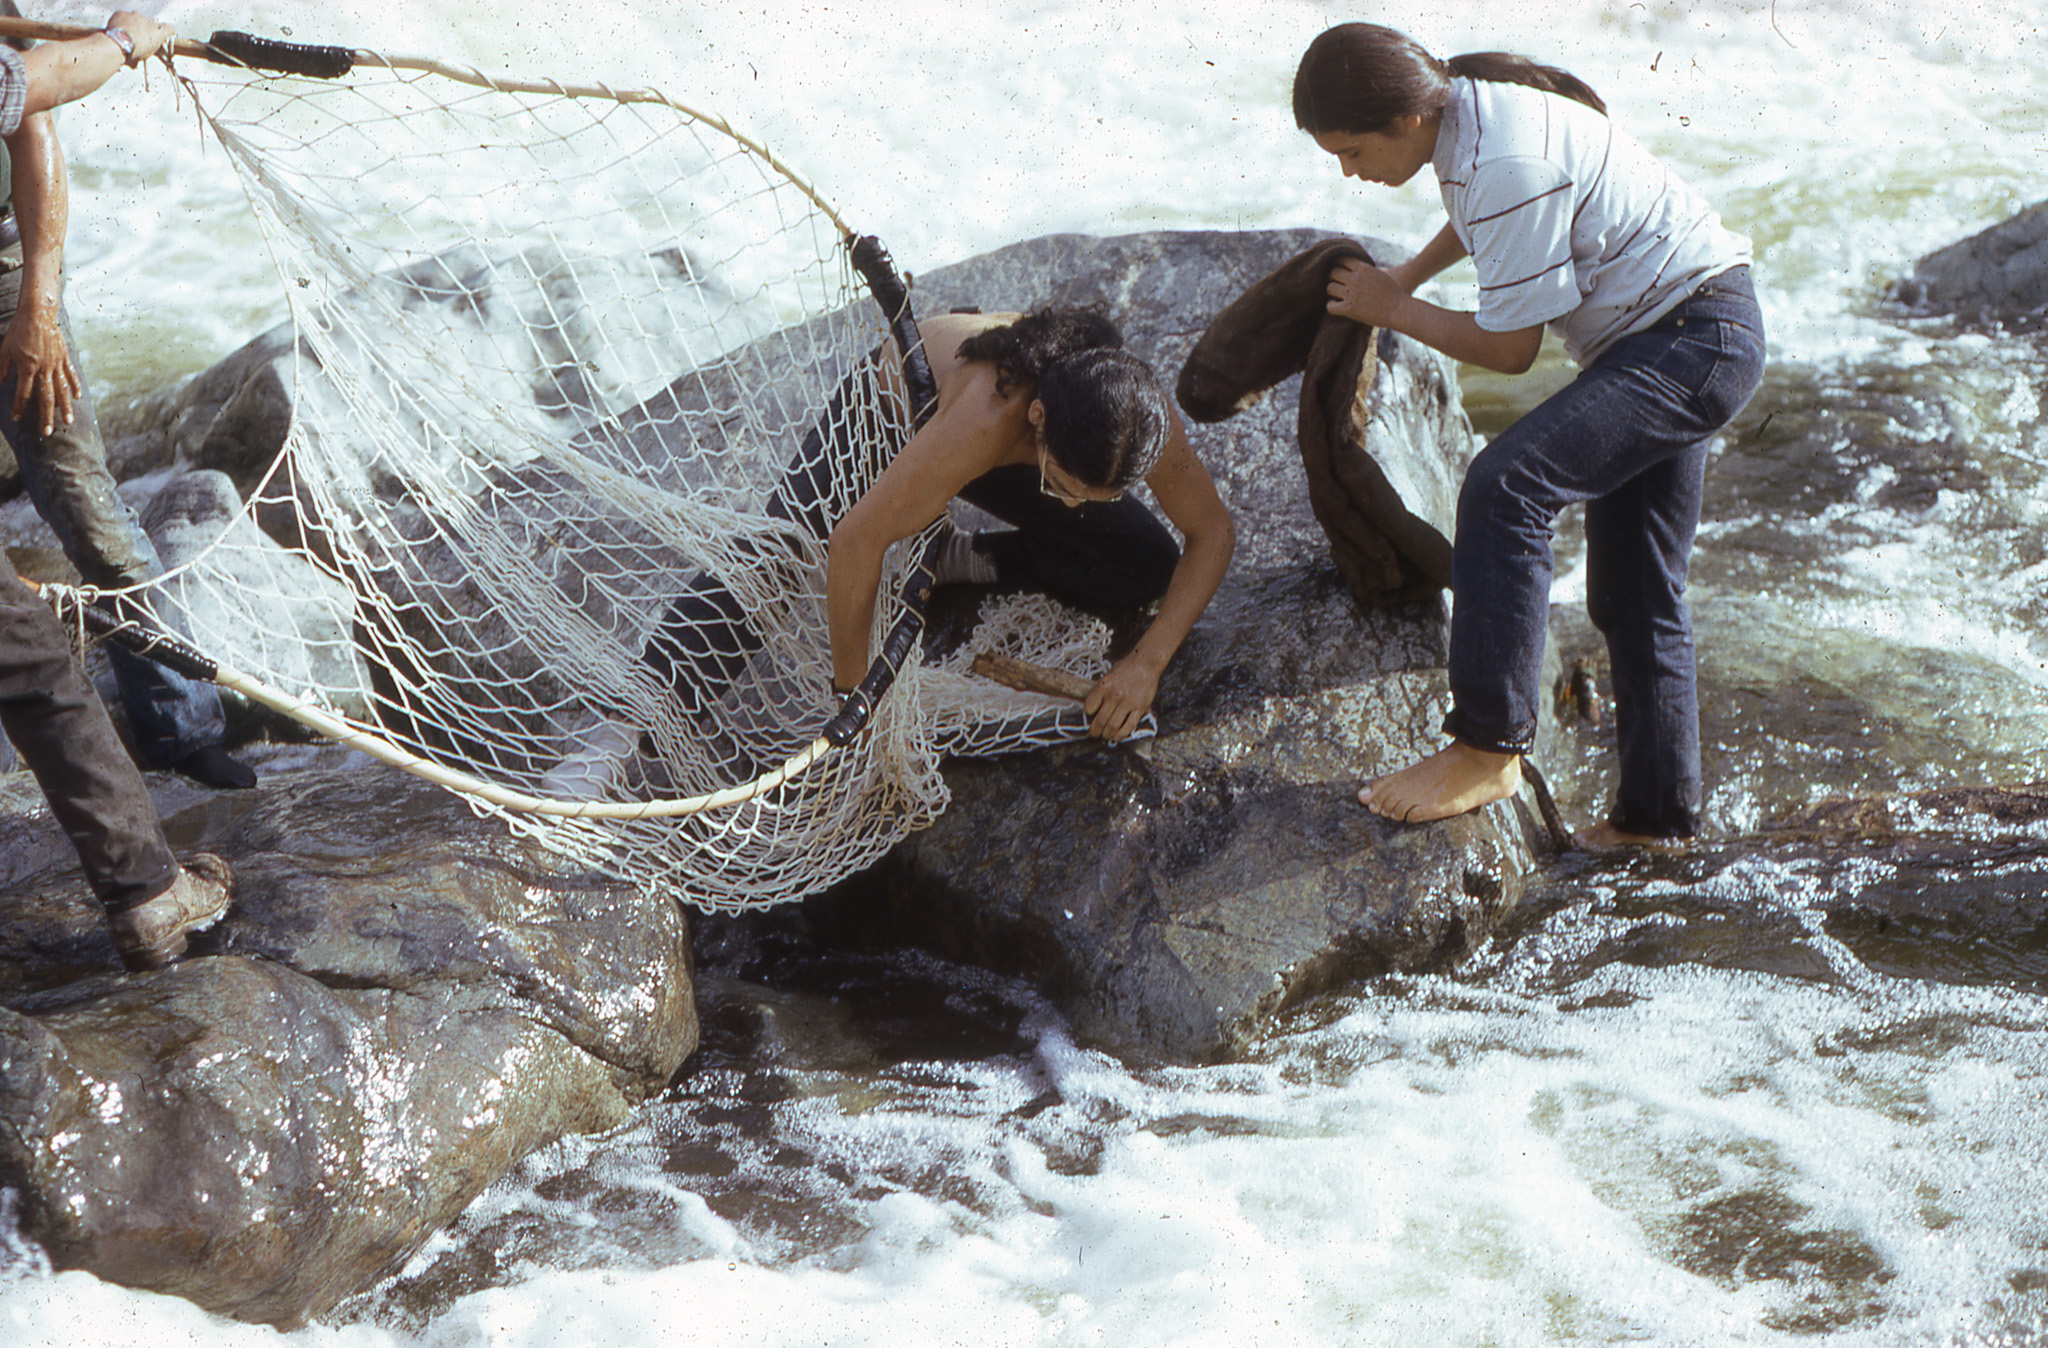 Dipnet fishing at Ishi Pishi Falls, 1974